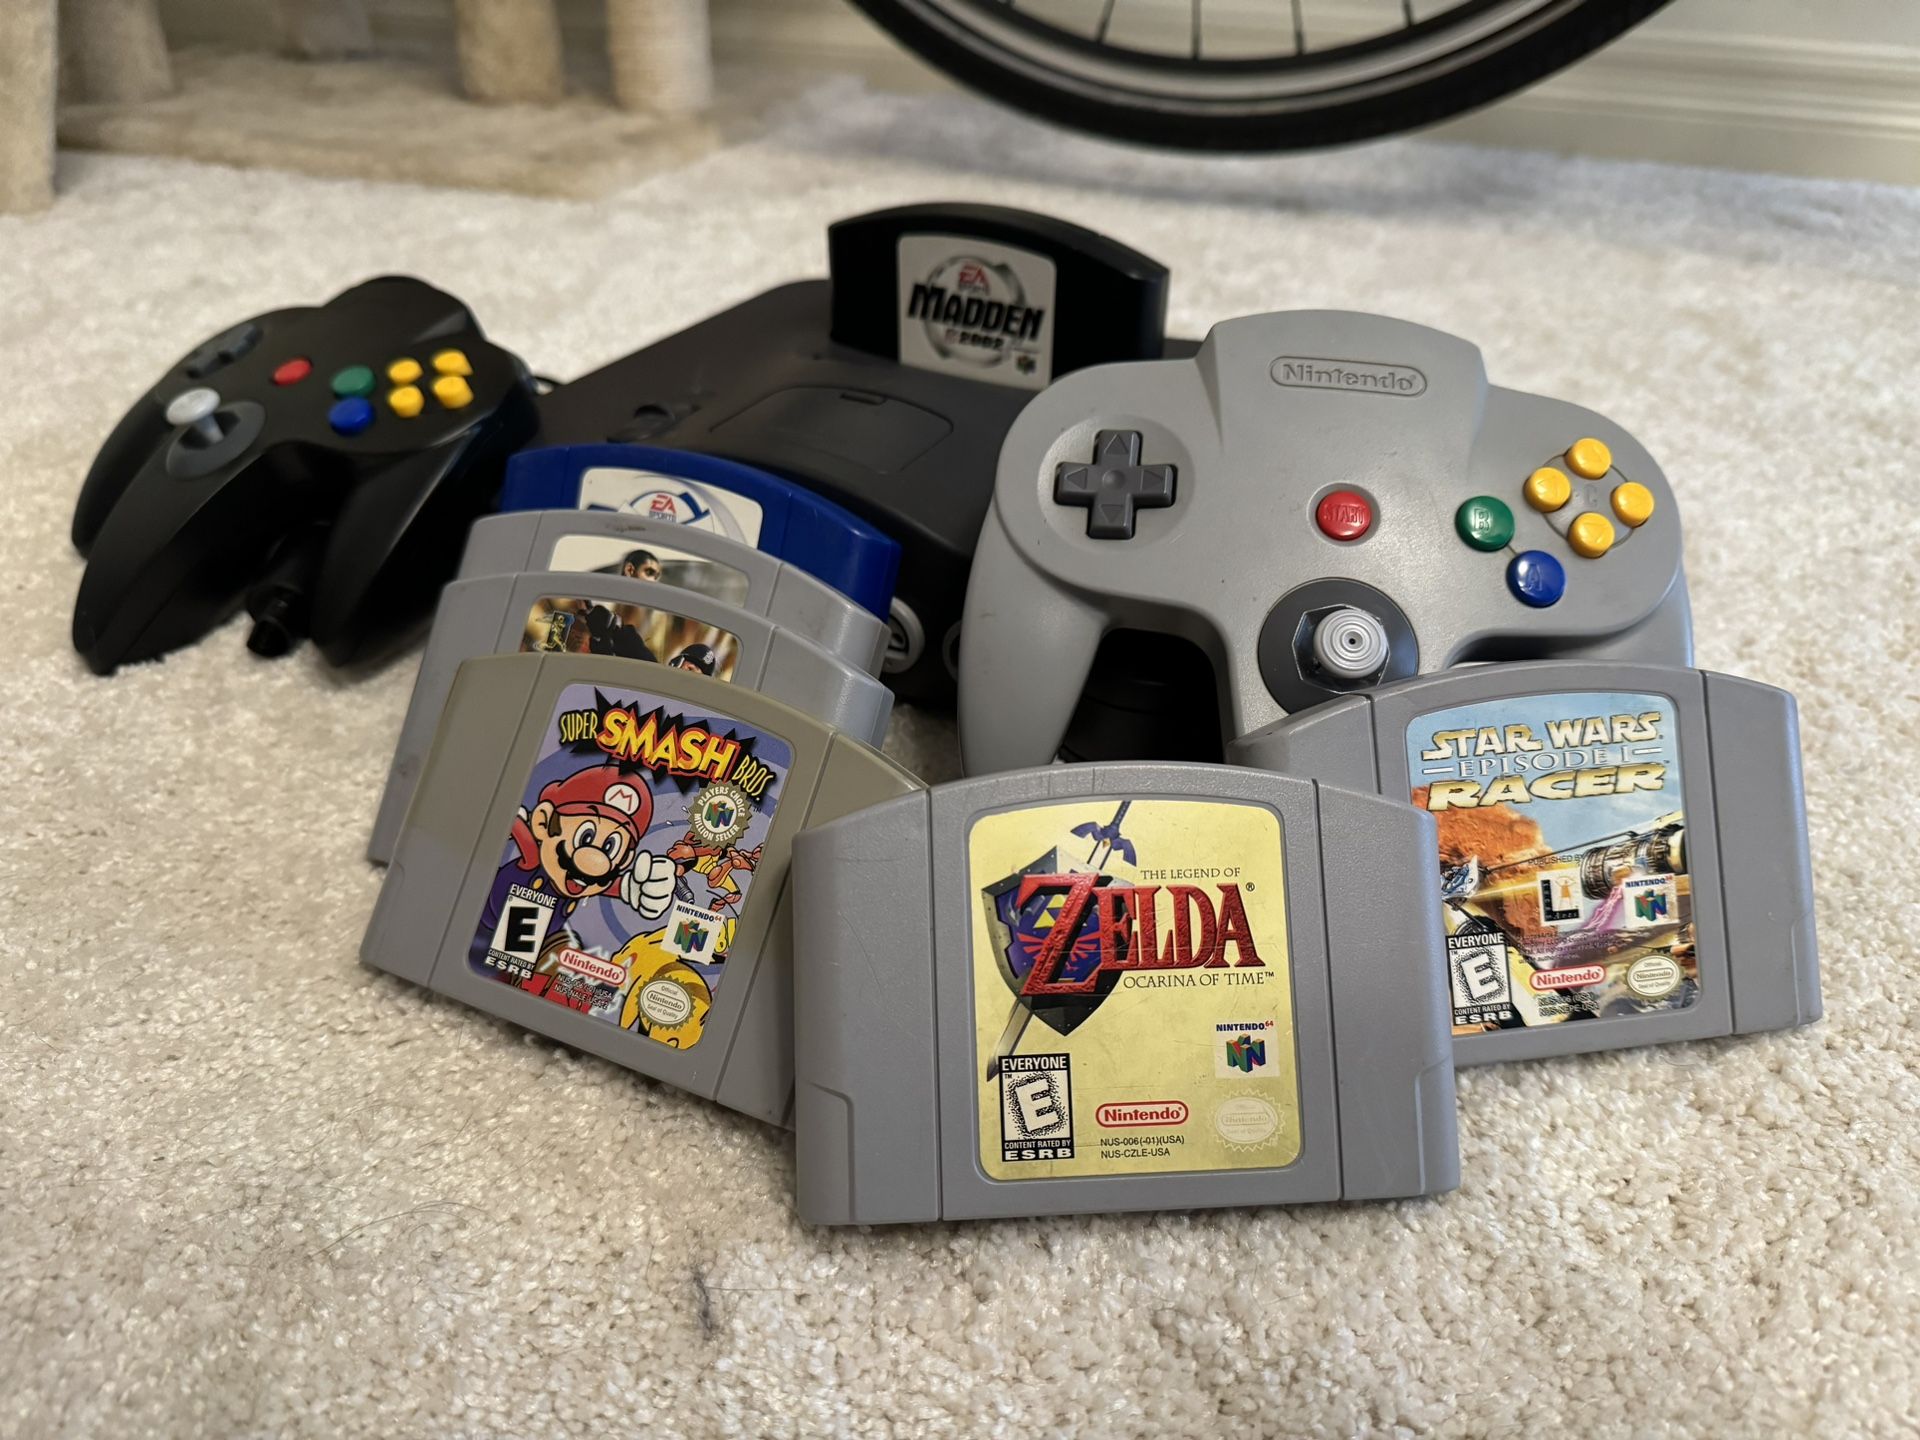 Nintendo 64 bundle Zelda, Super Smash Bros, Star Wars pod racer, controllers